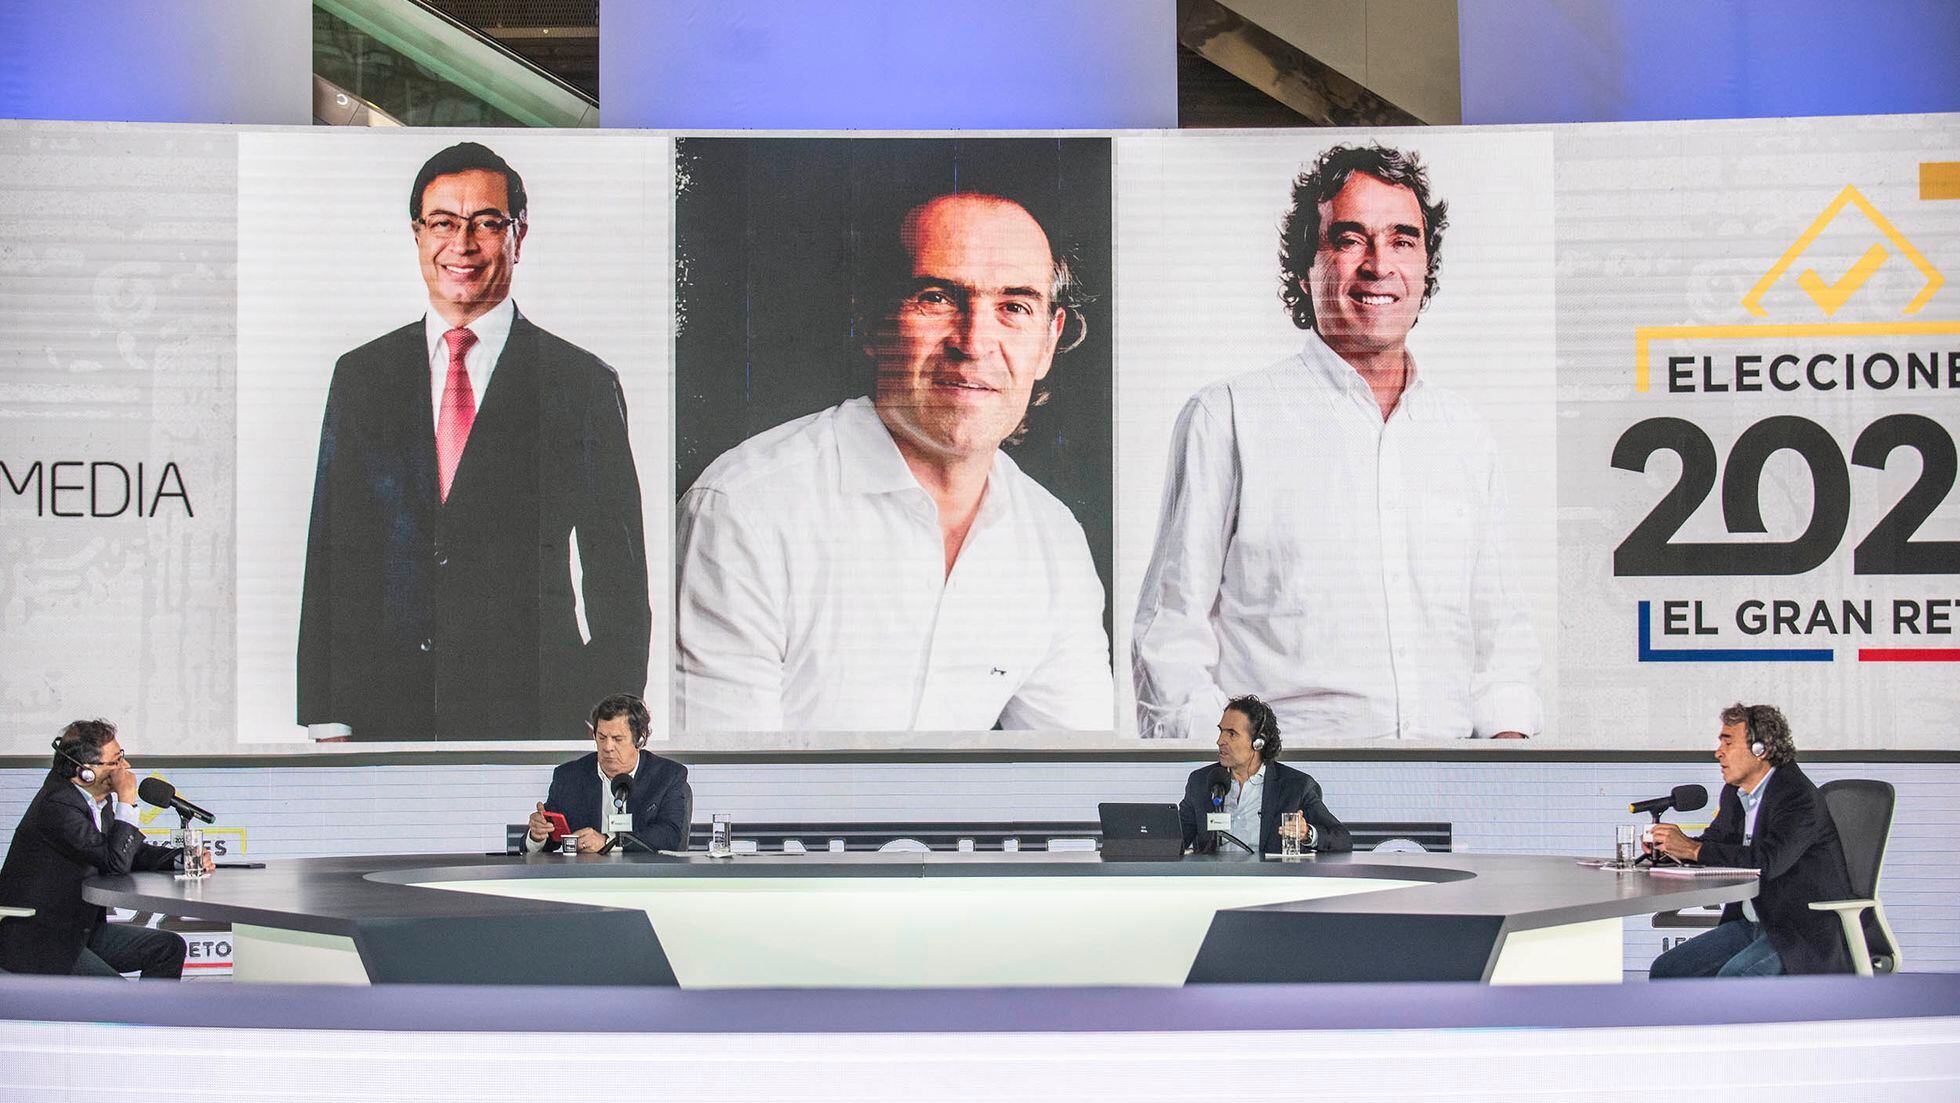 Elecciones presidenciales: Petro, Fajardo y Gutiérrez muestran la polarización política de Colombia en el debate electoral | Internacional | EL PAÍS